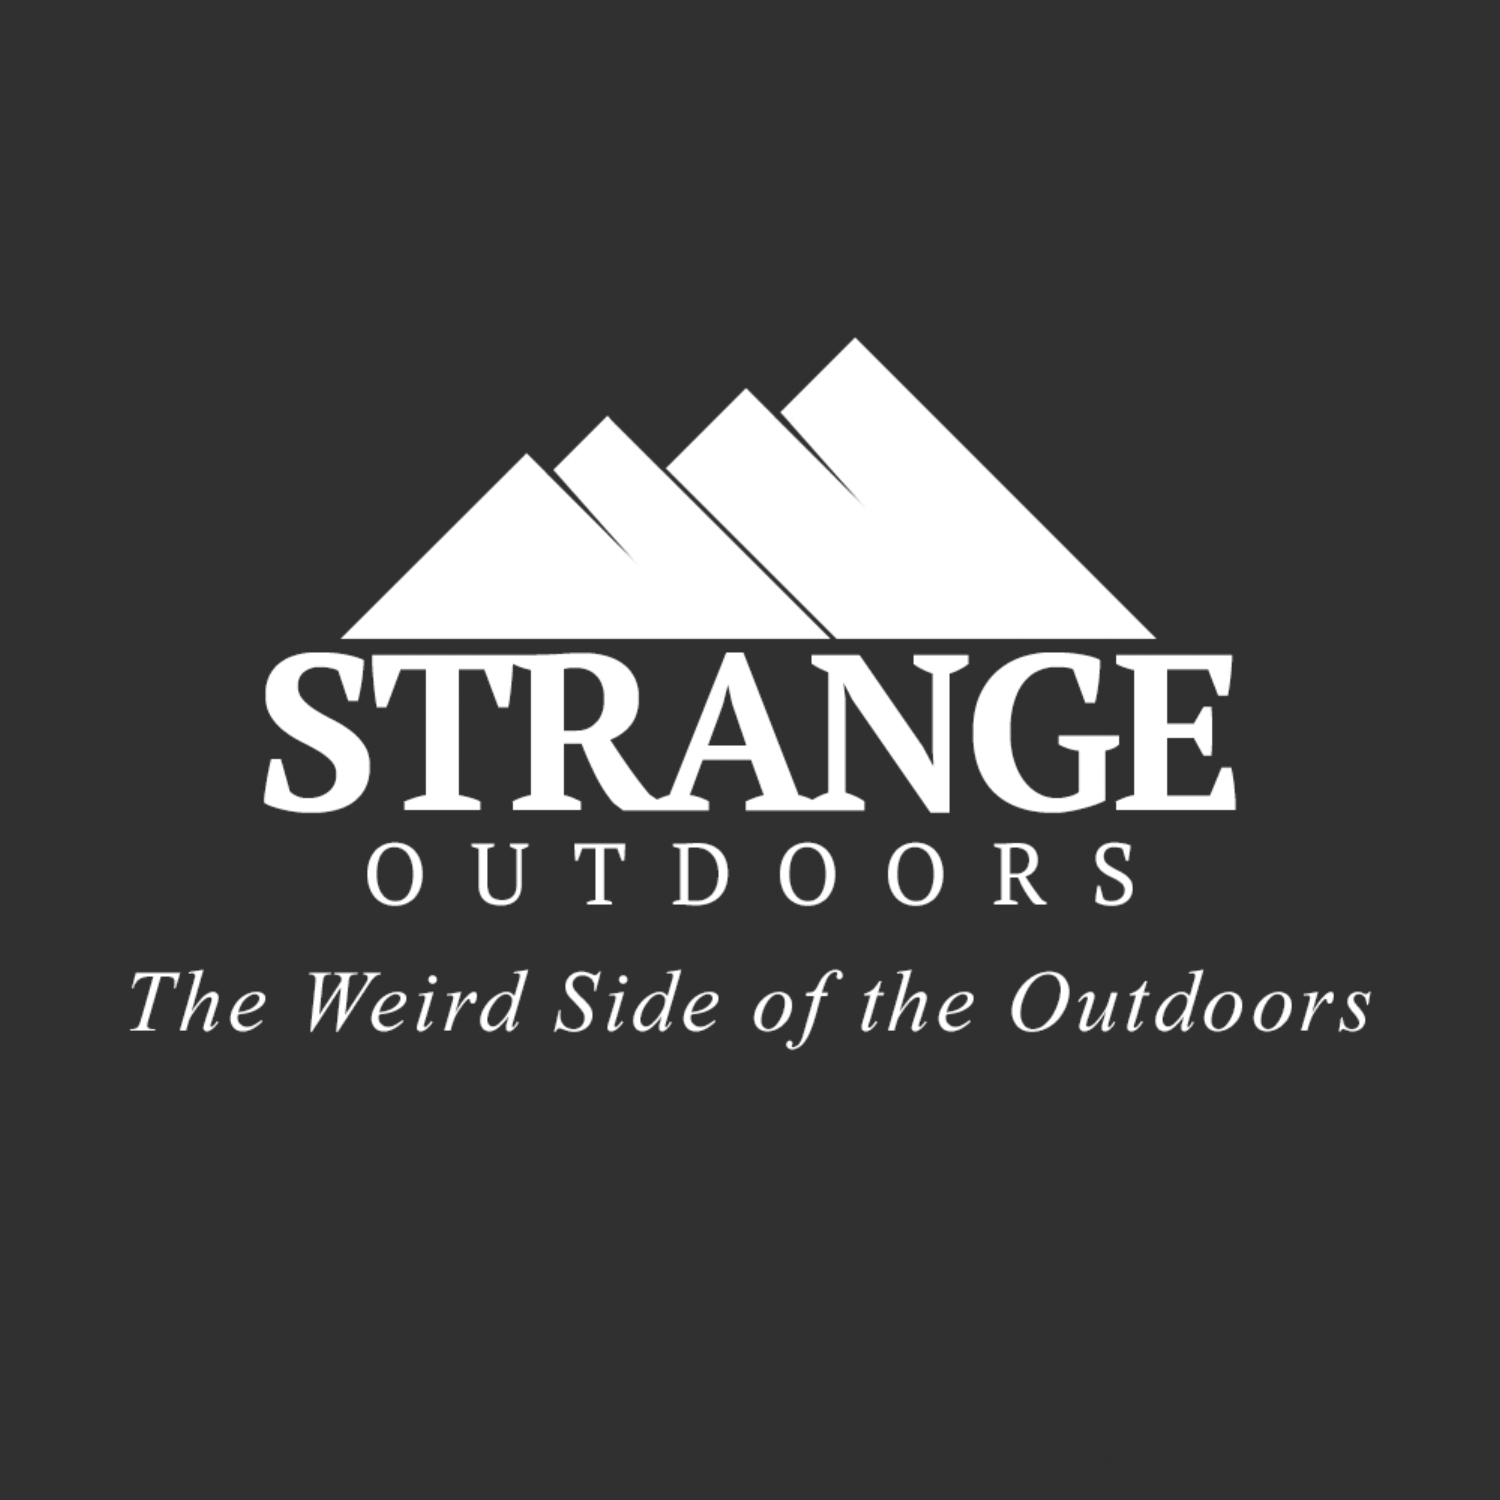 StrangeOutdoors.com